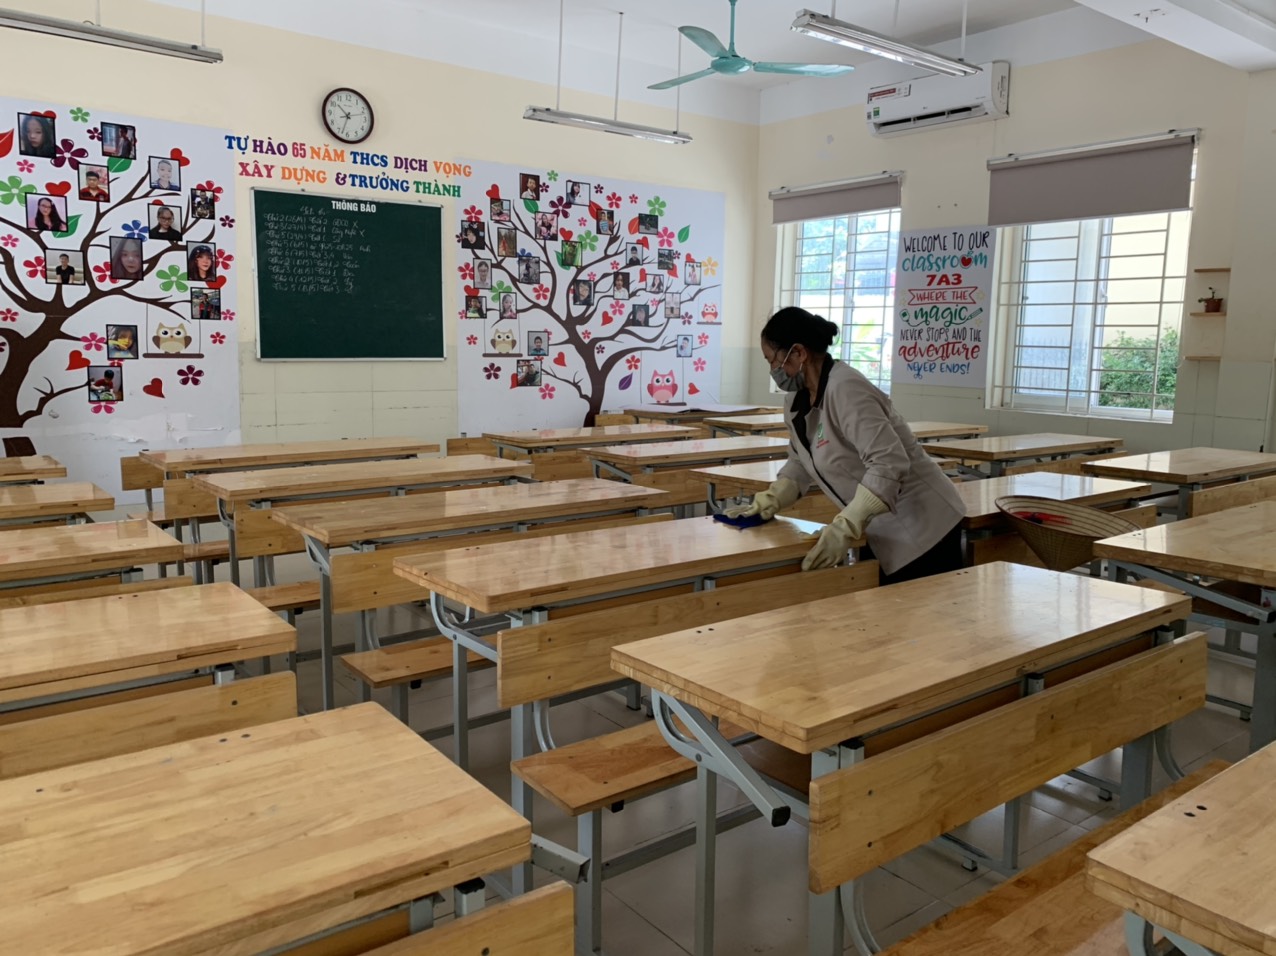 Trường học ở Hà Nội: Siết chặt khai báo y tế, đổi lịch kiểm tra ...